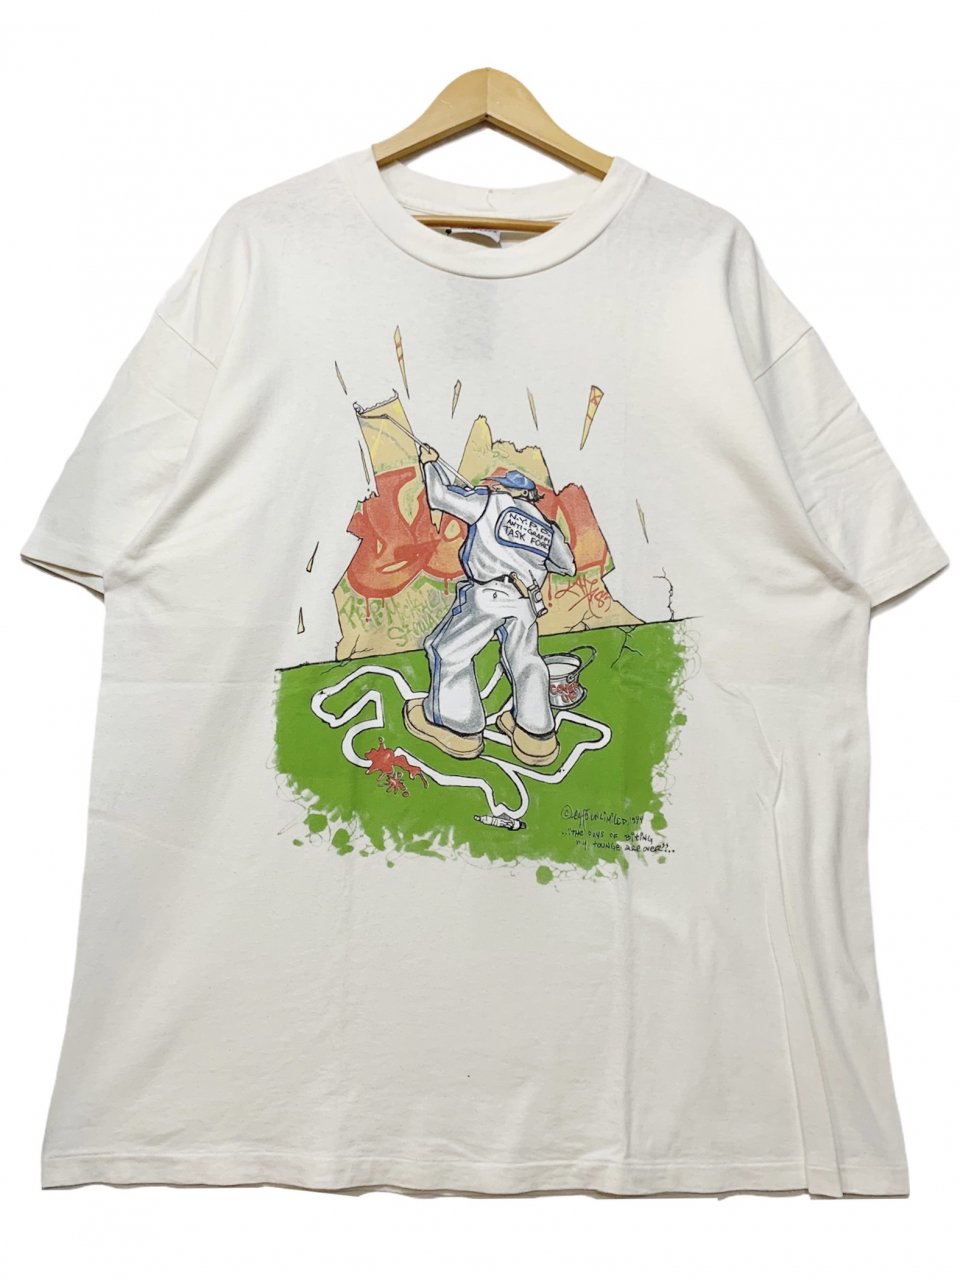 【希少】ecko unltd ゲームシャツ 90s 半袖 エコーアンリミテッド